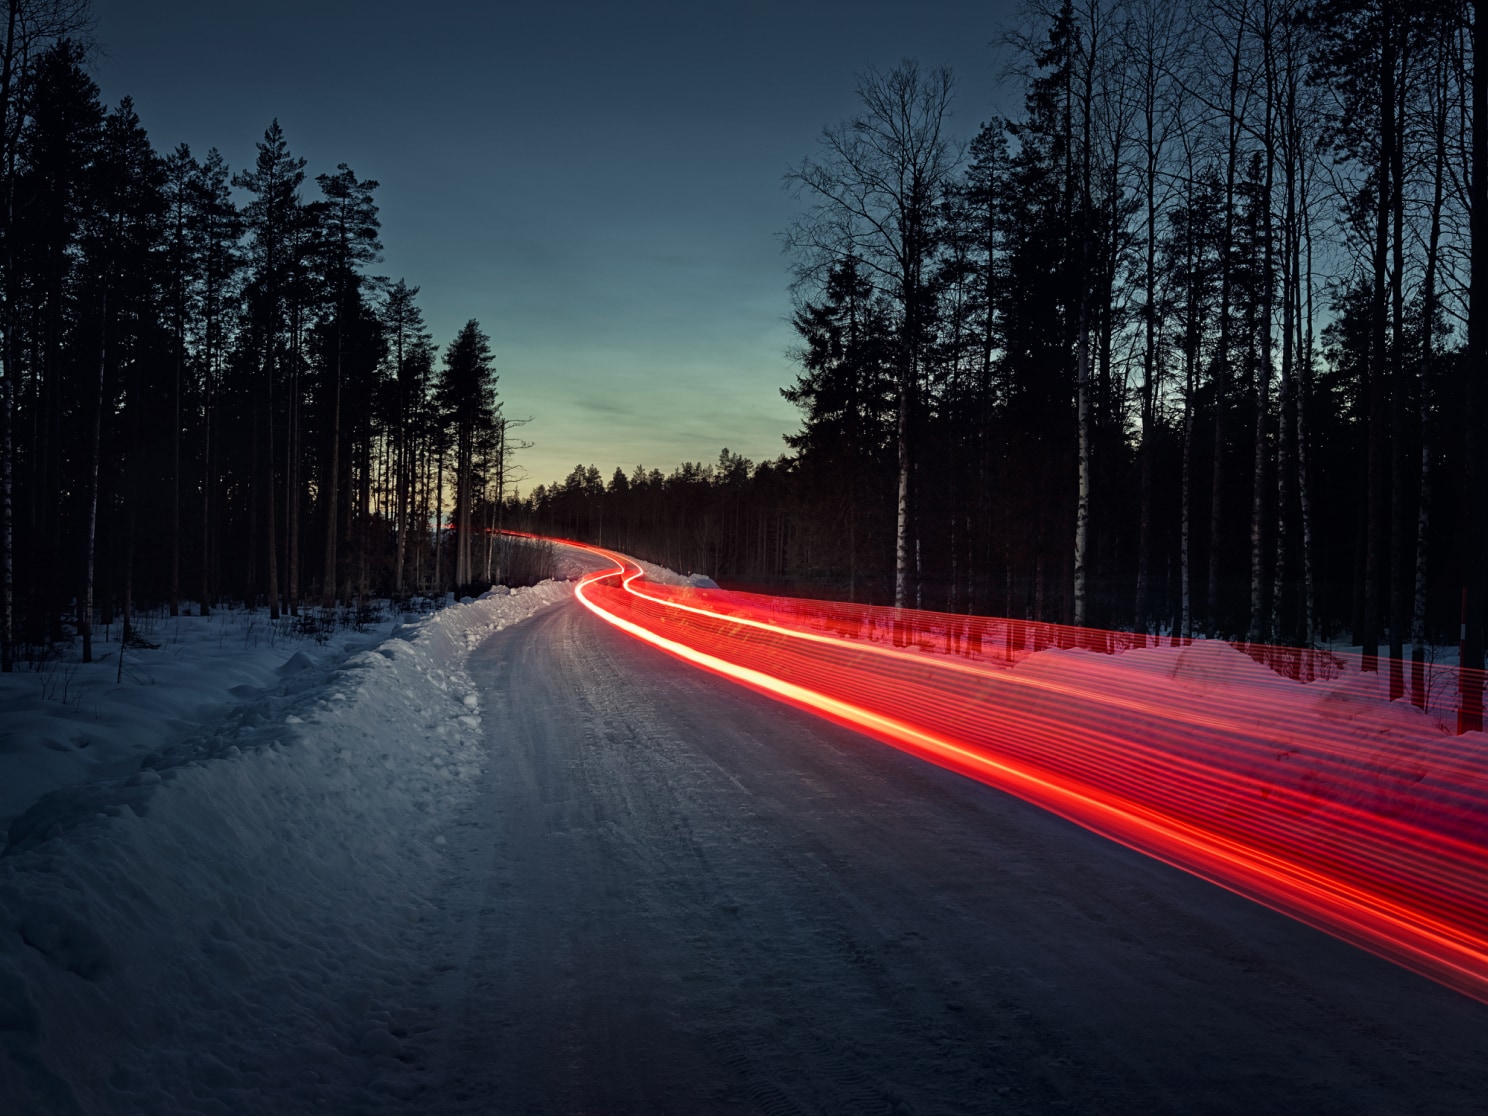 Λήψη με αργή ταχύτητα που μοιάζει με το ίχνος των κόκκινων πίσω φαναριών σε έναν παγωμένο δρόμο.